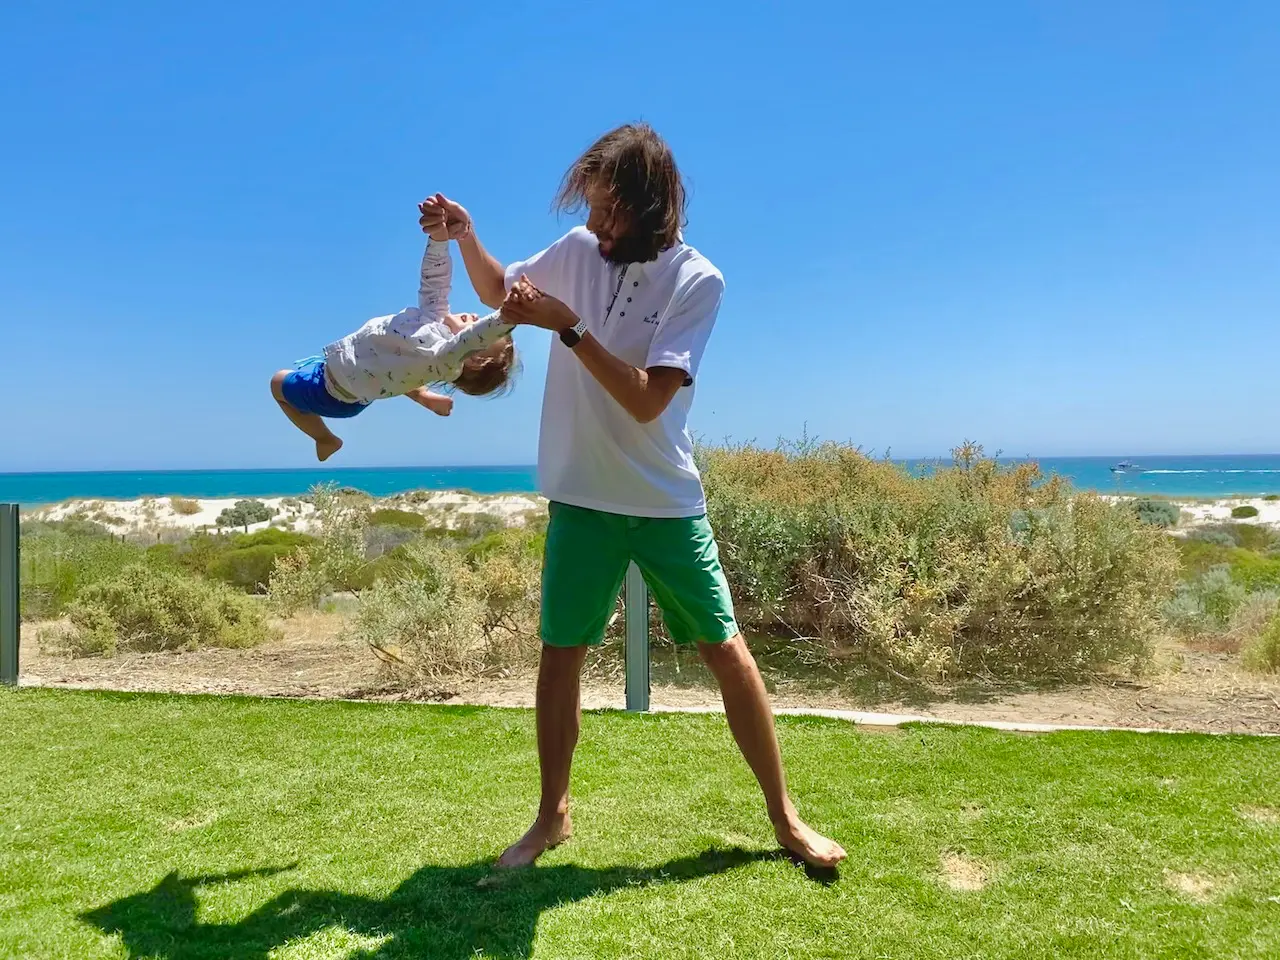 Папа и сын играют у океана, папа крутит ребенка